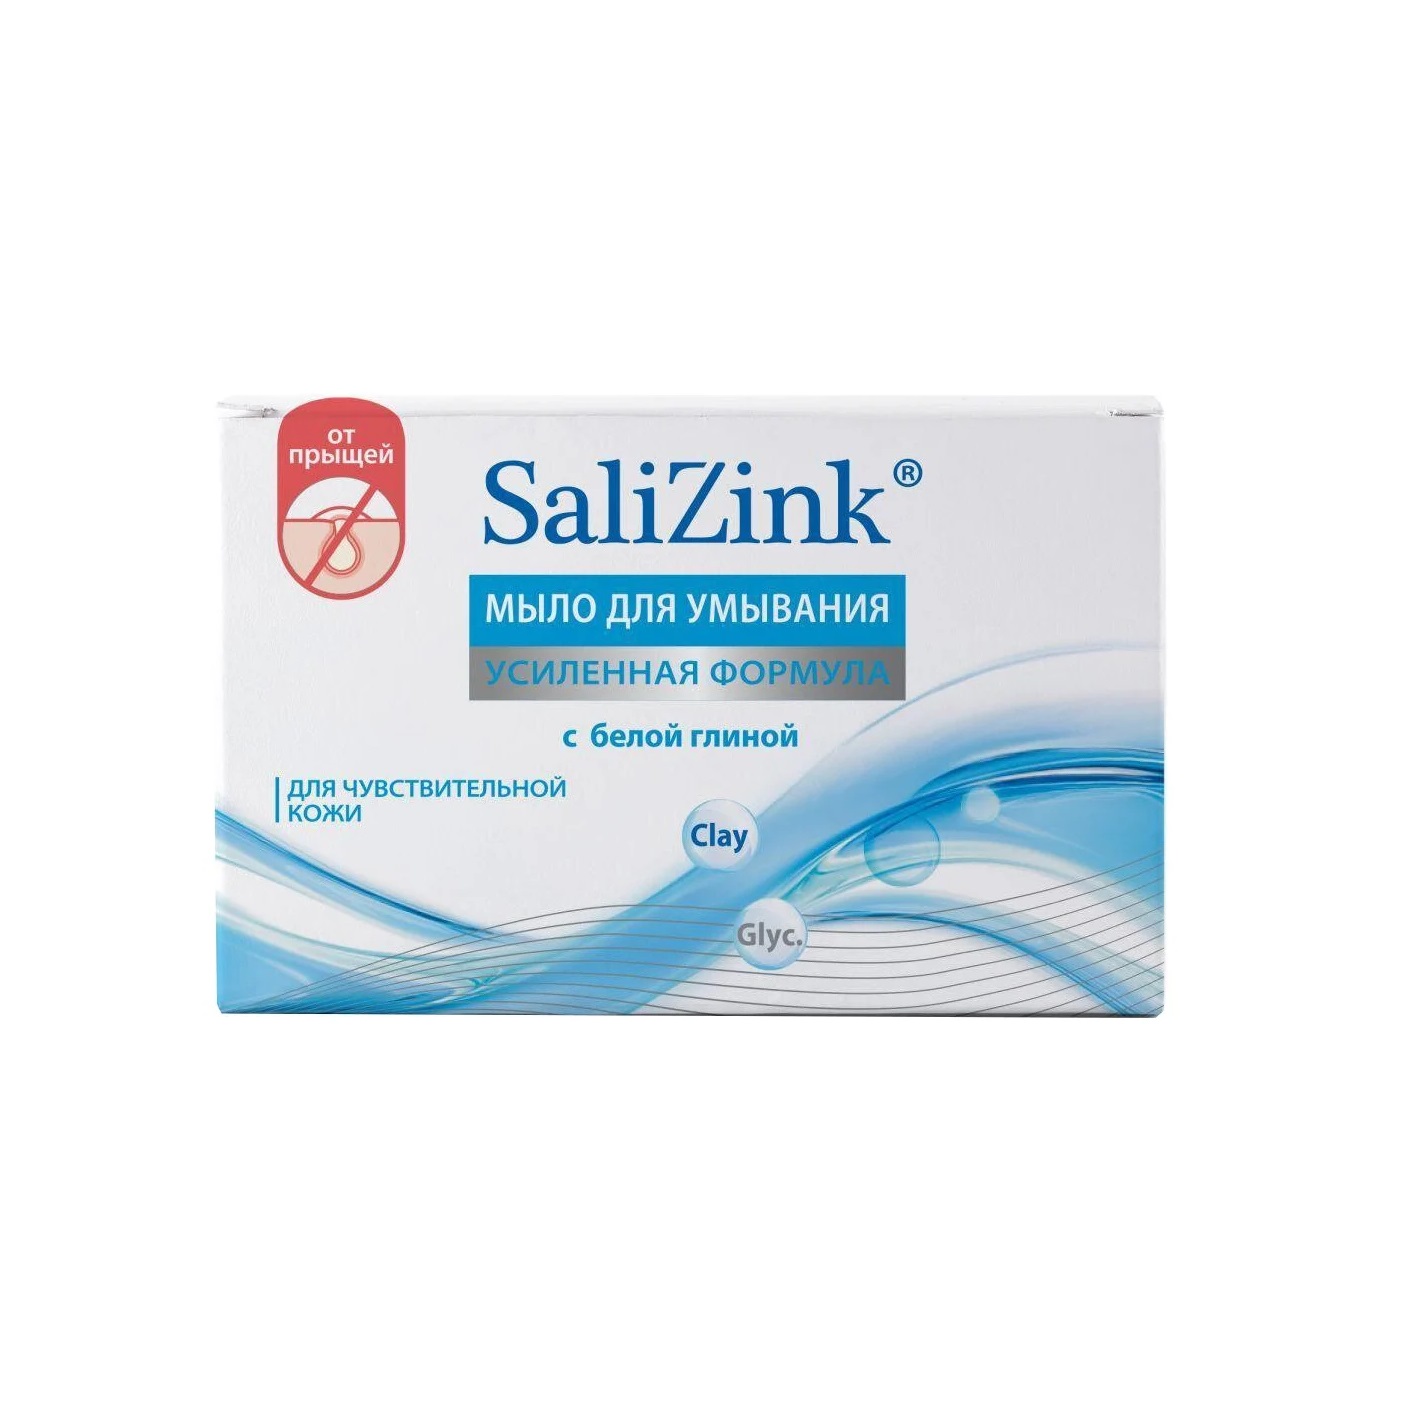 Салицинк мыло для умывания для чувствительной кожи с белойглиной 100гр